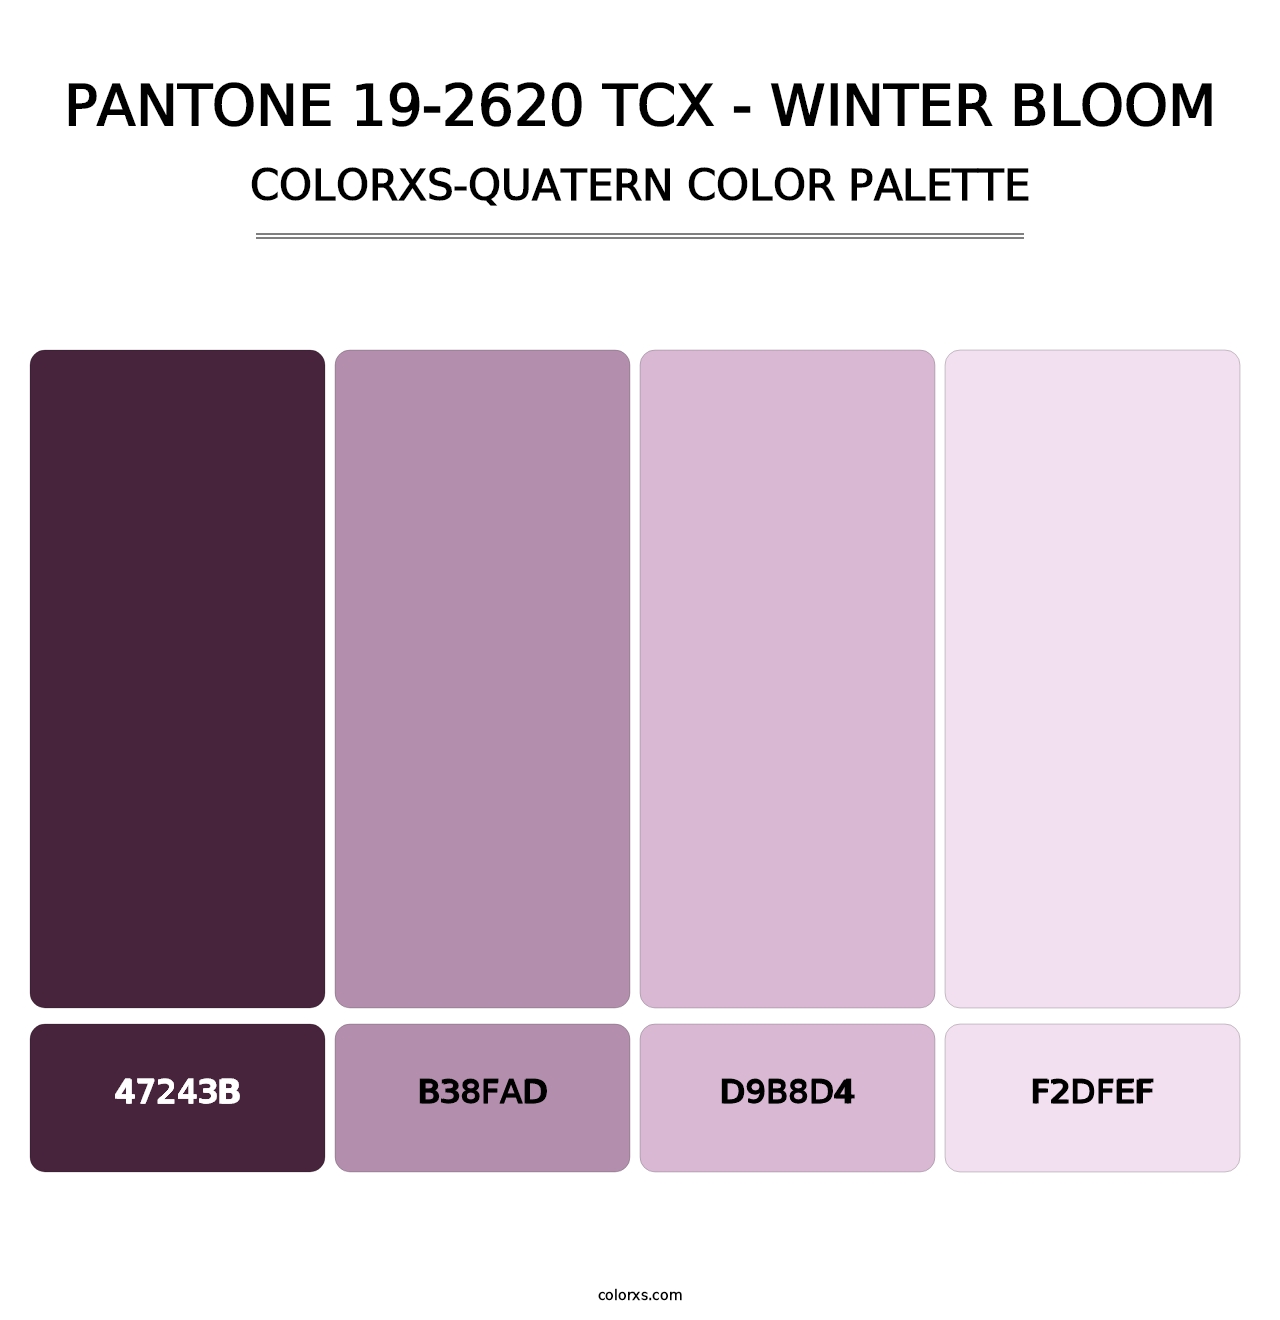 PANTONE 19-2620 TCX - Winter Bloom - Colorxs Quatern Palette